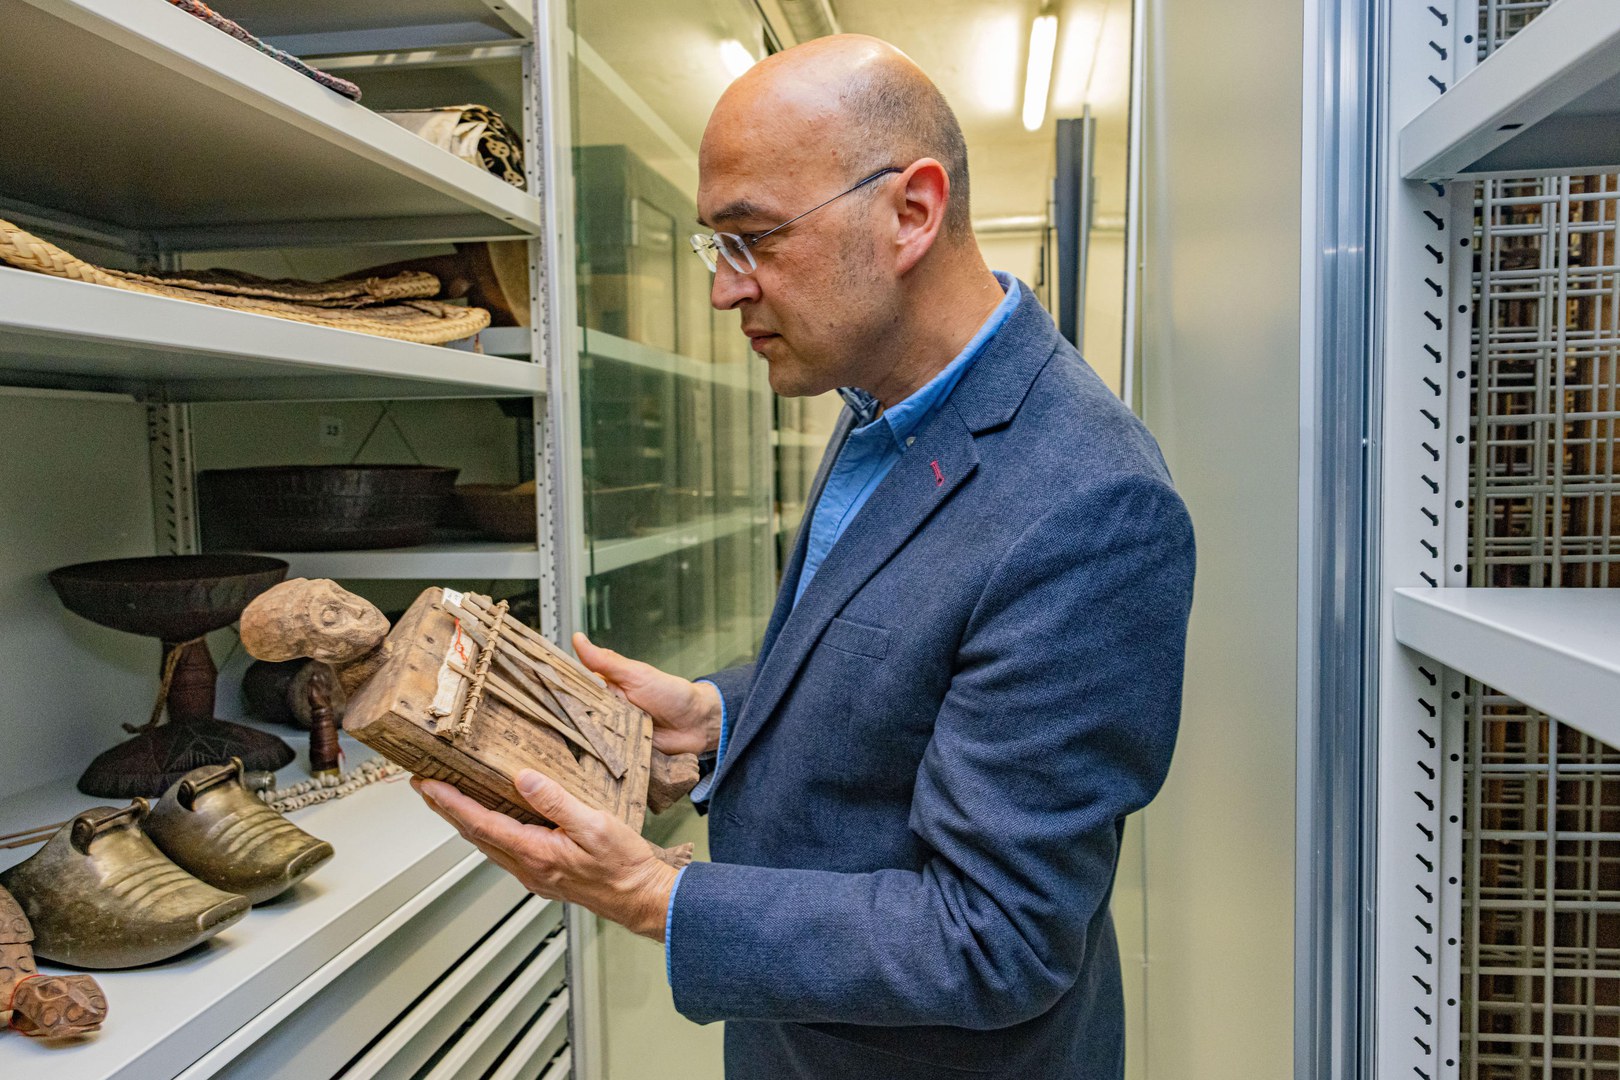 Der Anthropologe Prof. Dr. Paul Basu ist neuer Hertz-Professor an der Universität Bonn. Er setzt sich kritisch mit dem Erbe der westlichen Wissensproduktion auseinander – insbesondere, wie sich dieses Erbe in wissenschaftlichen Archiven und Sammlungen niederschlägt.